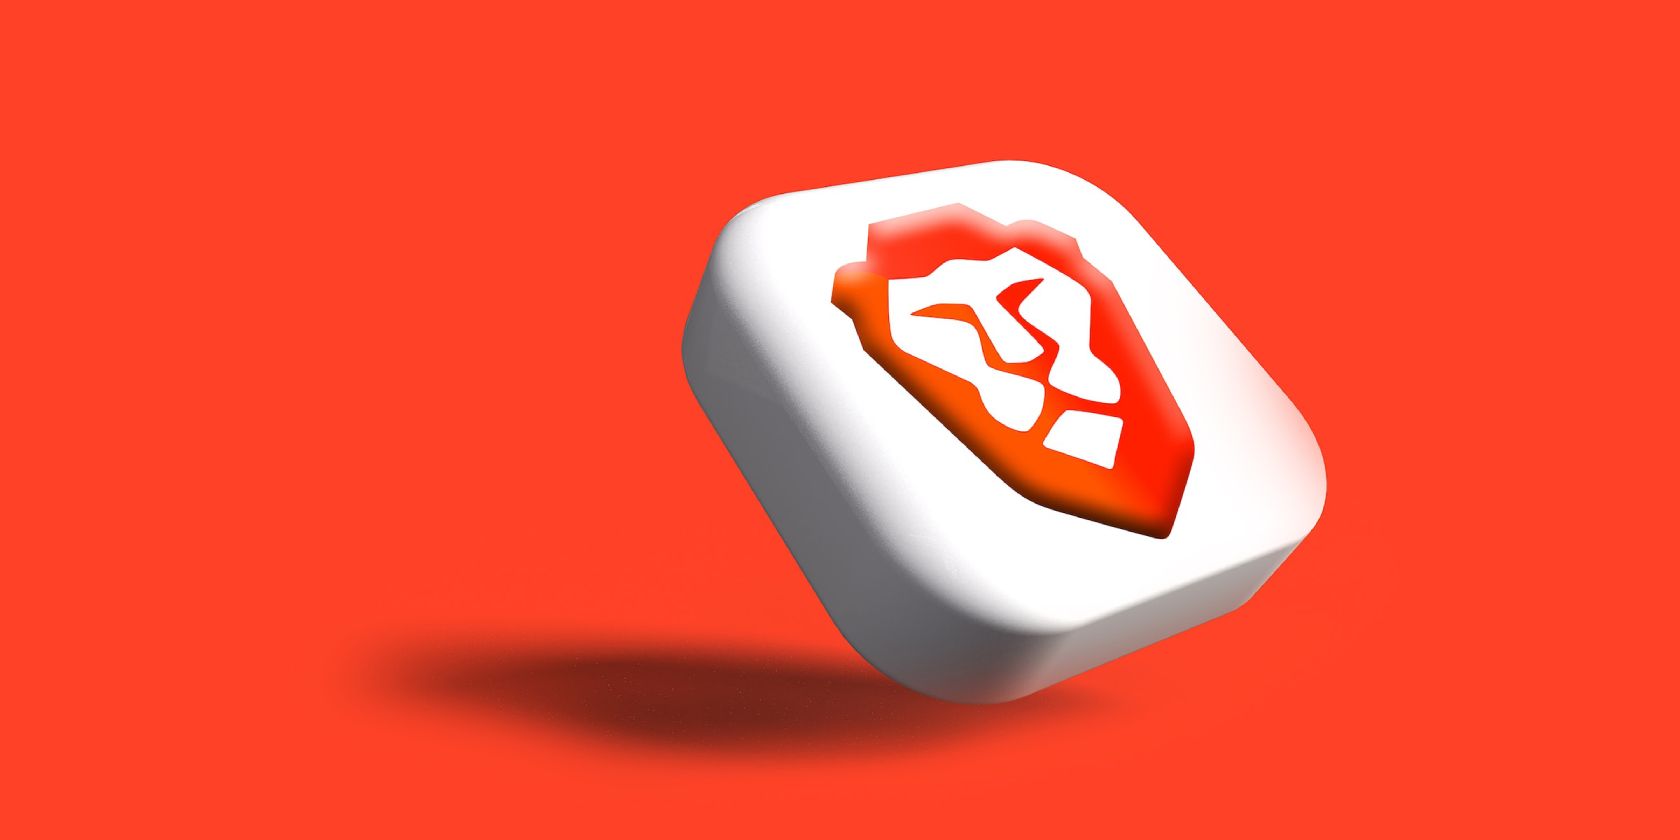 Brave Browser logo against an orange backdrop